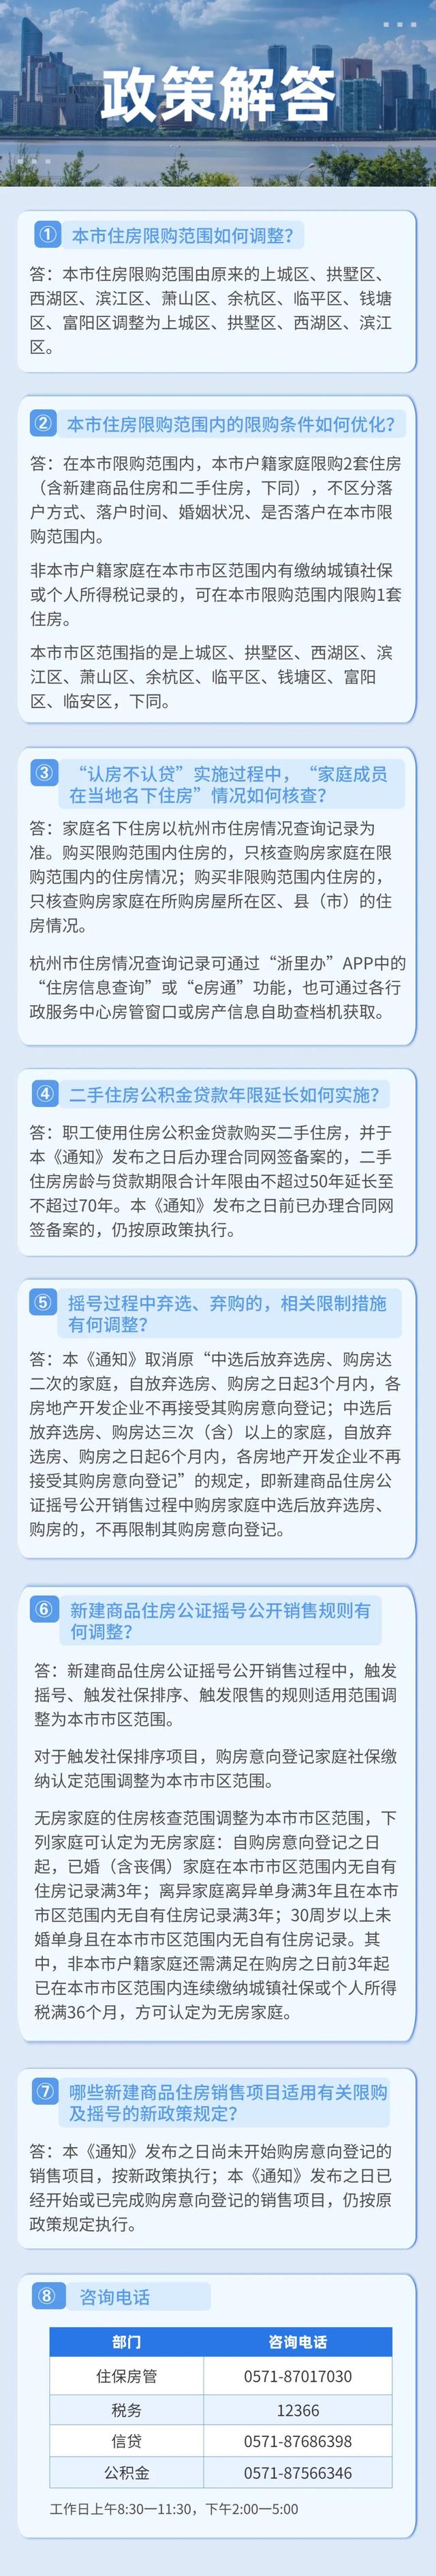 杭州楼市新政公布，限购范围调整为上城区等4区